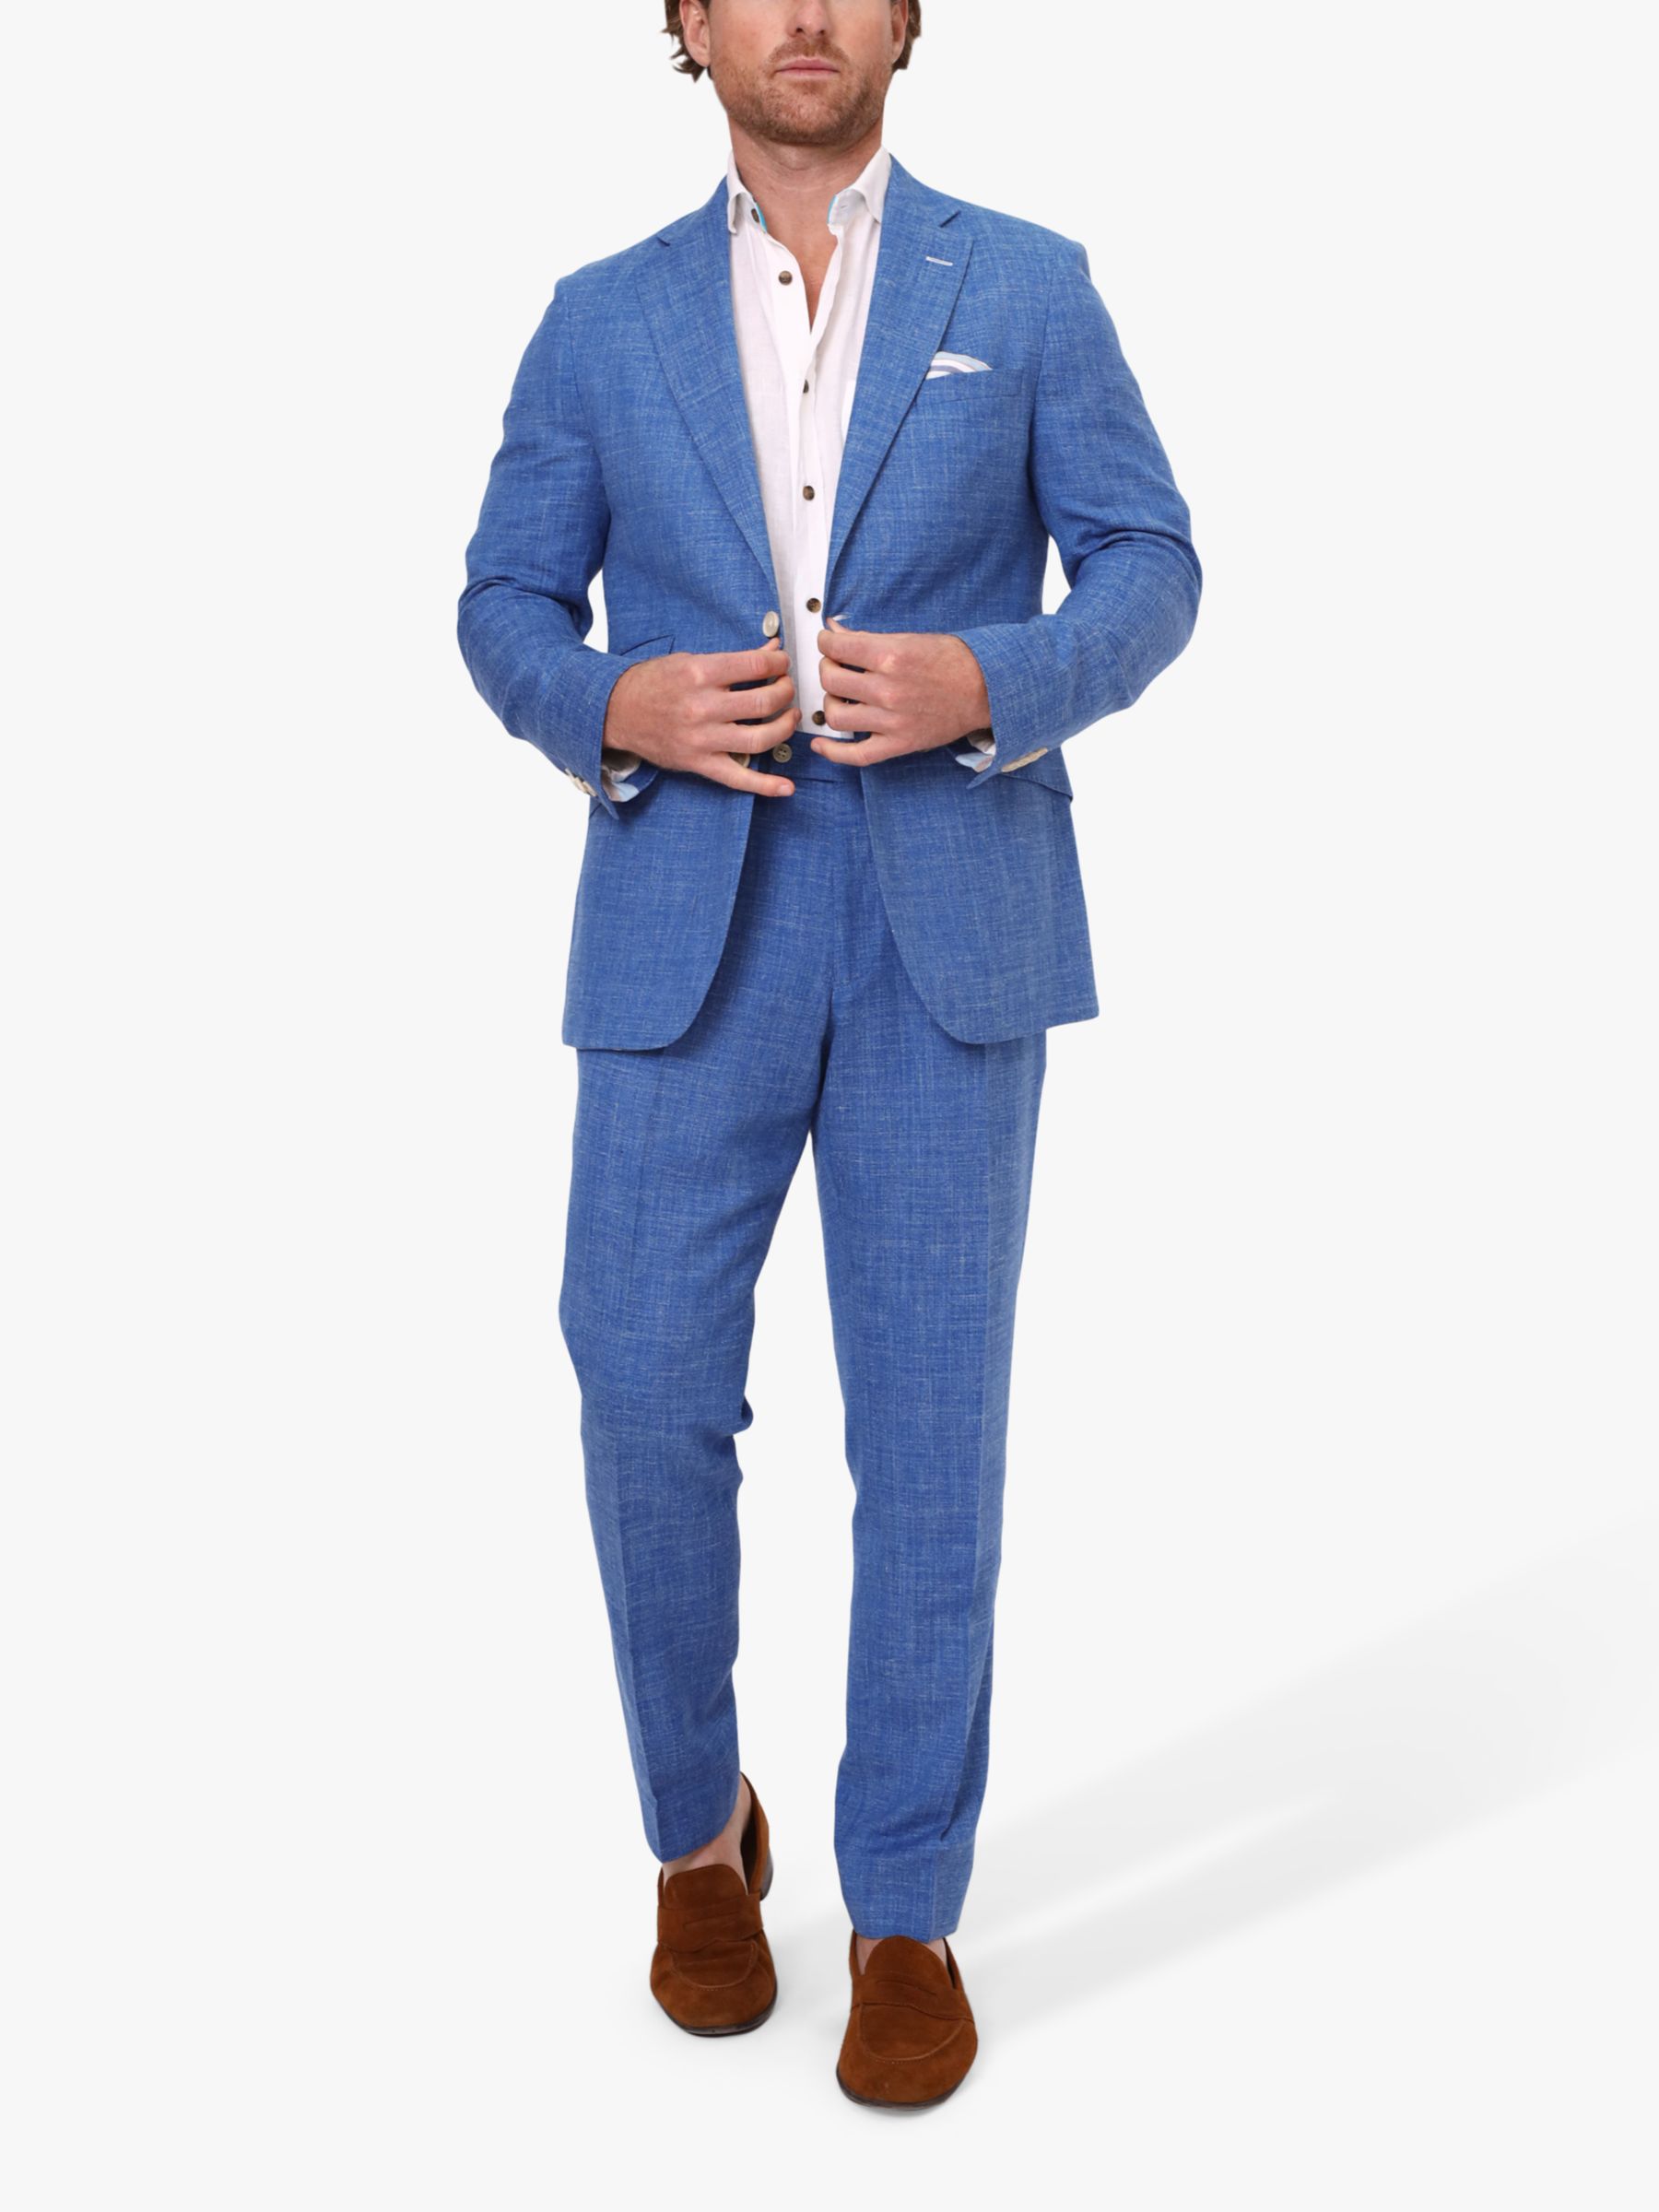 Buy KOY Linen Blend Suit Trousers, Mid Blue Online at johnlewis.com